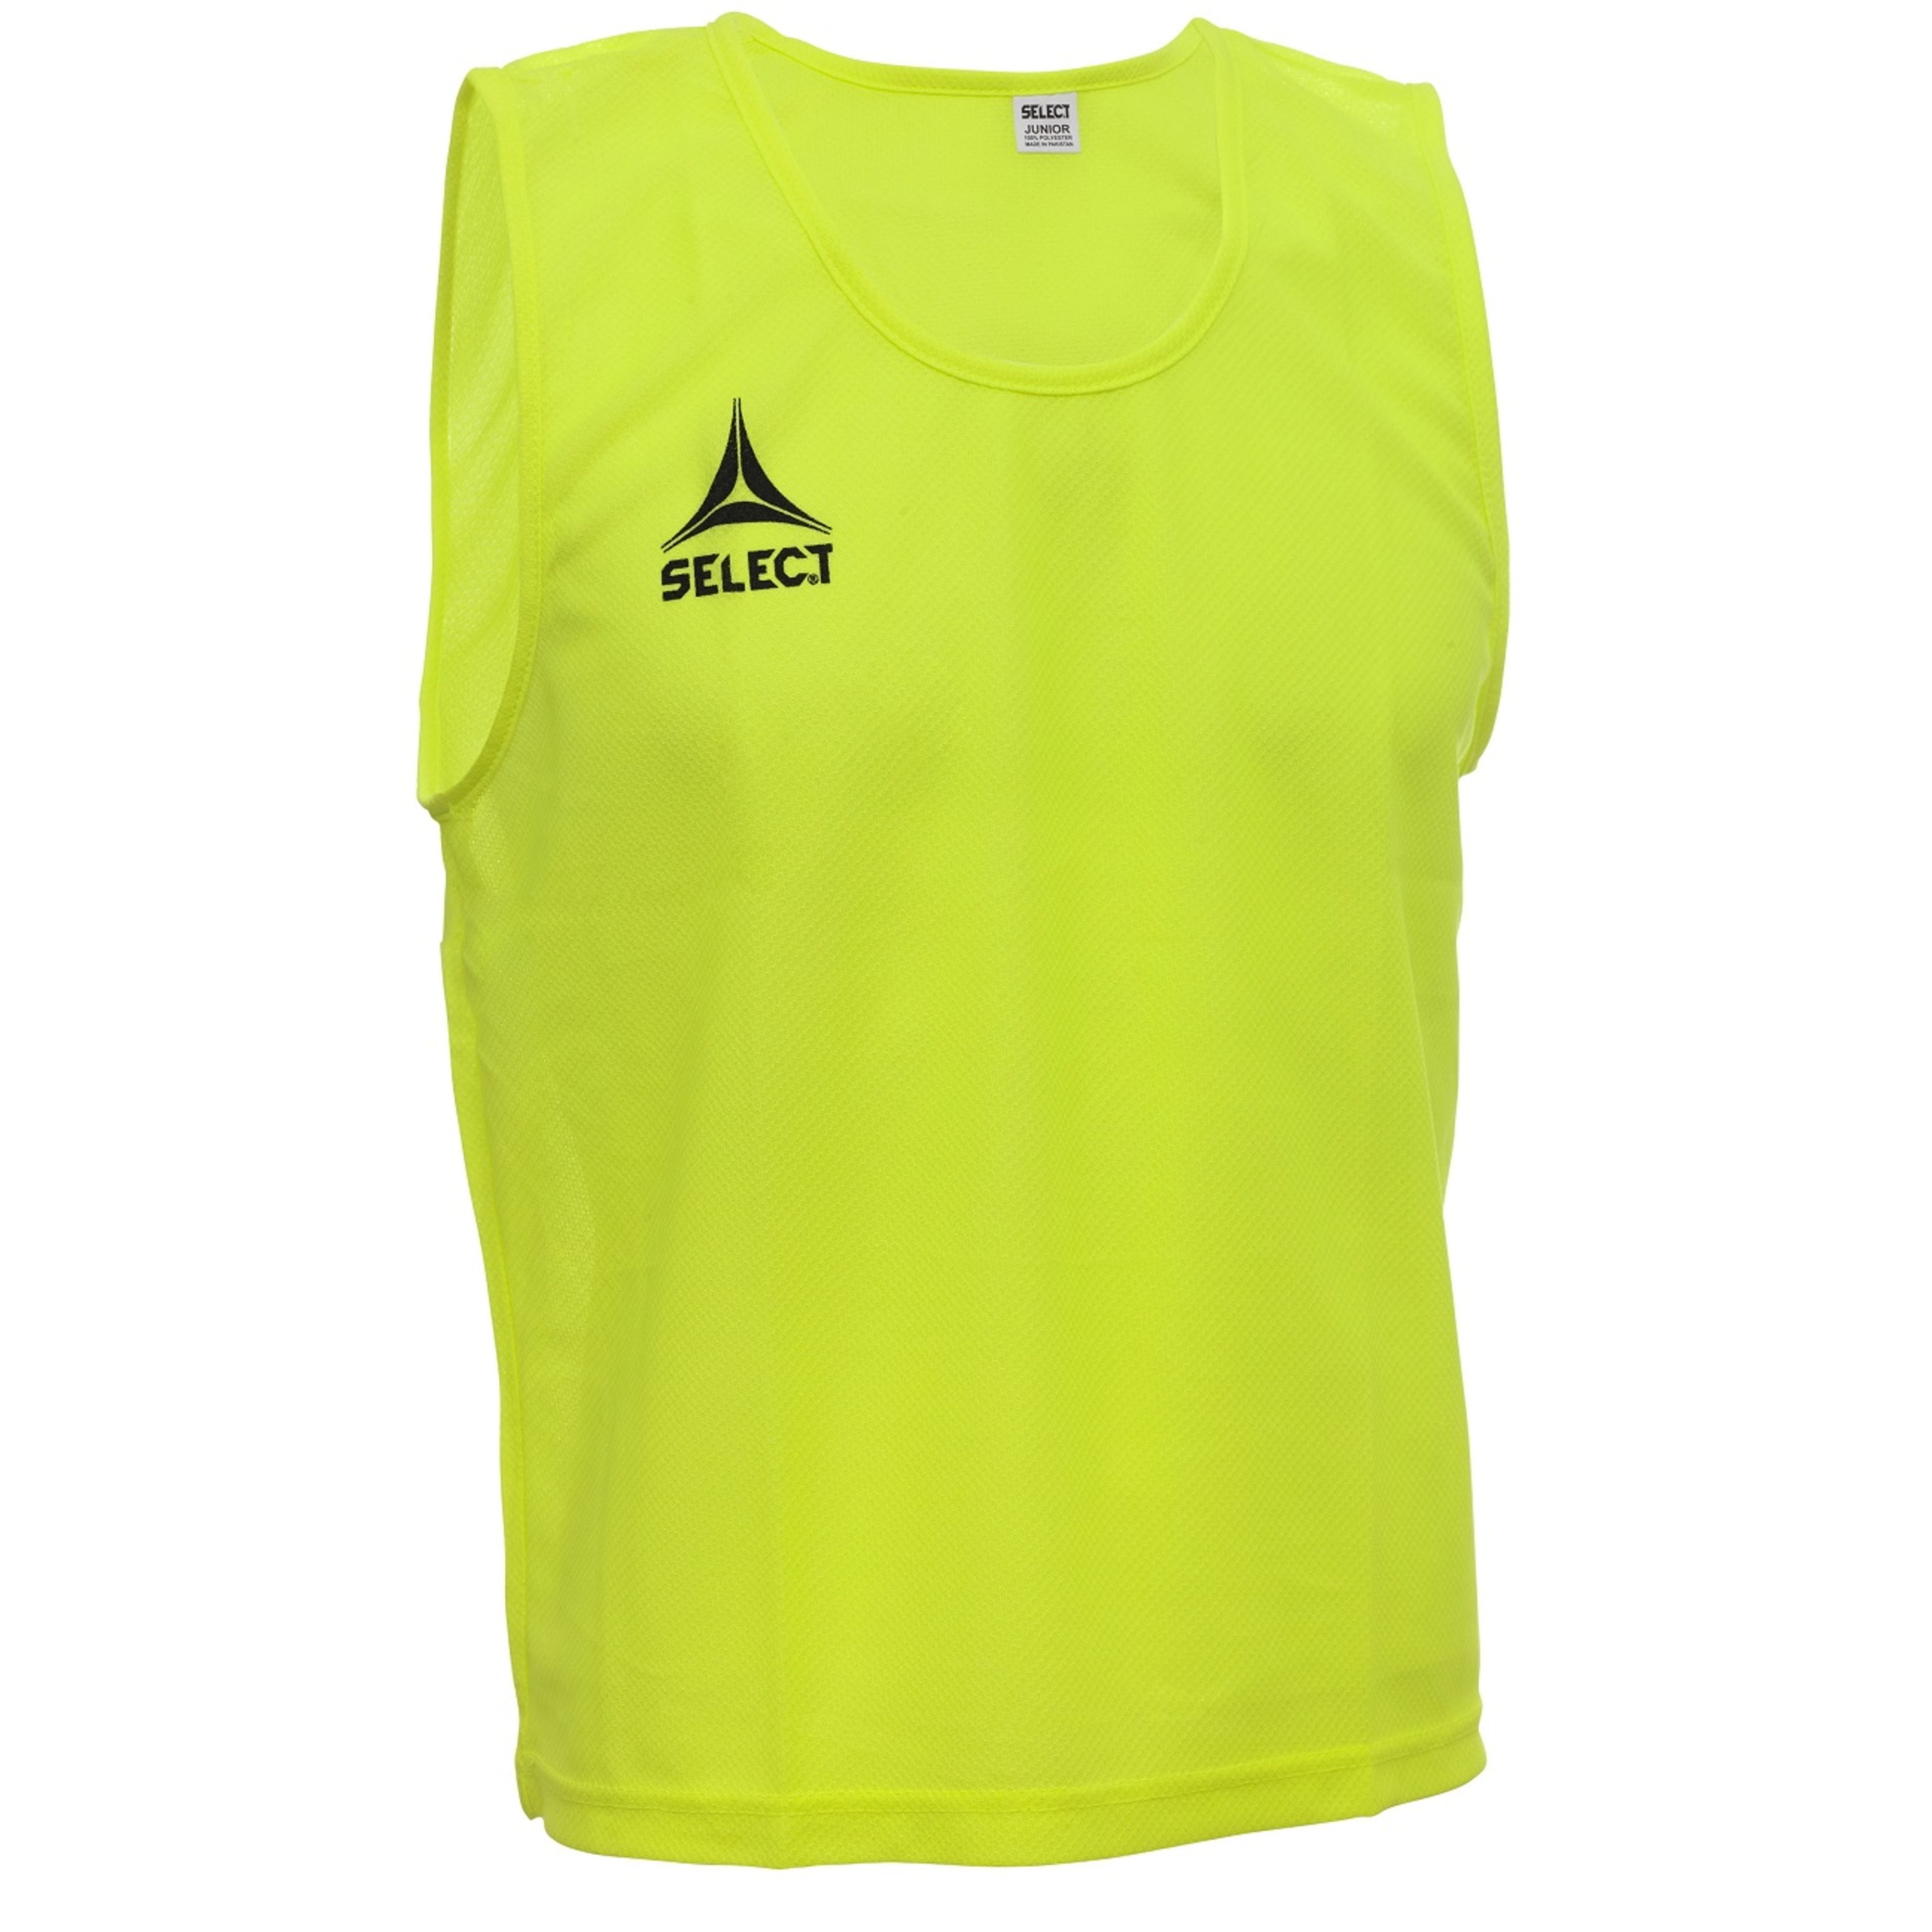 Camiseta Select Basic - amarillo - 